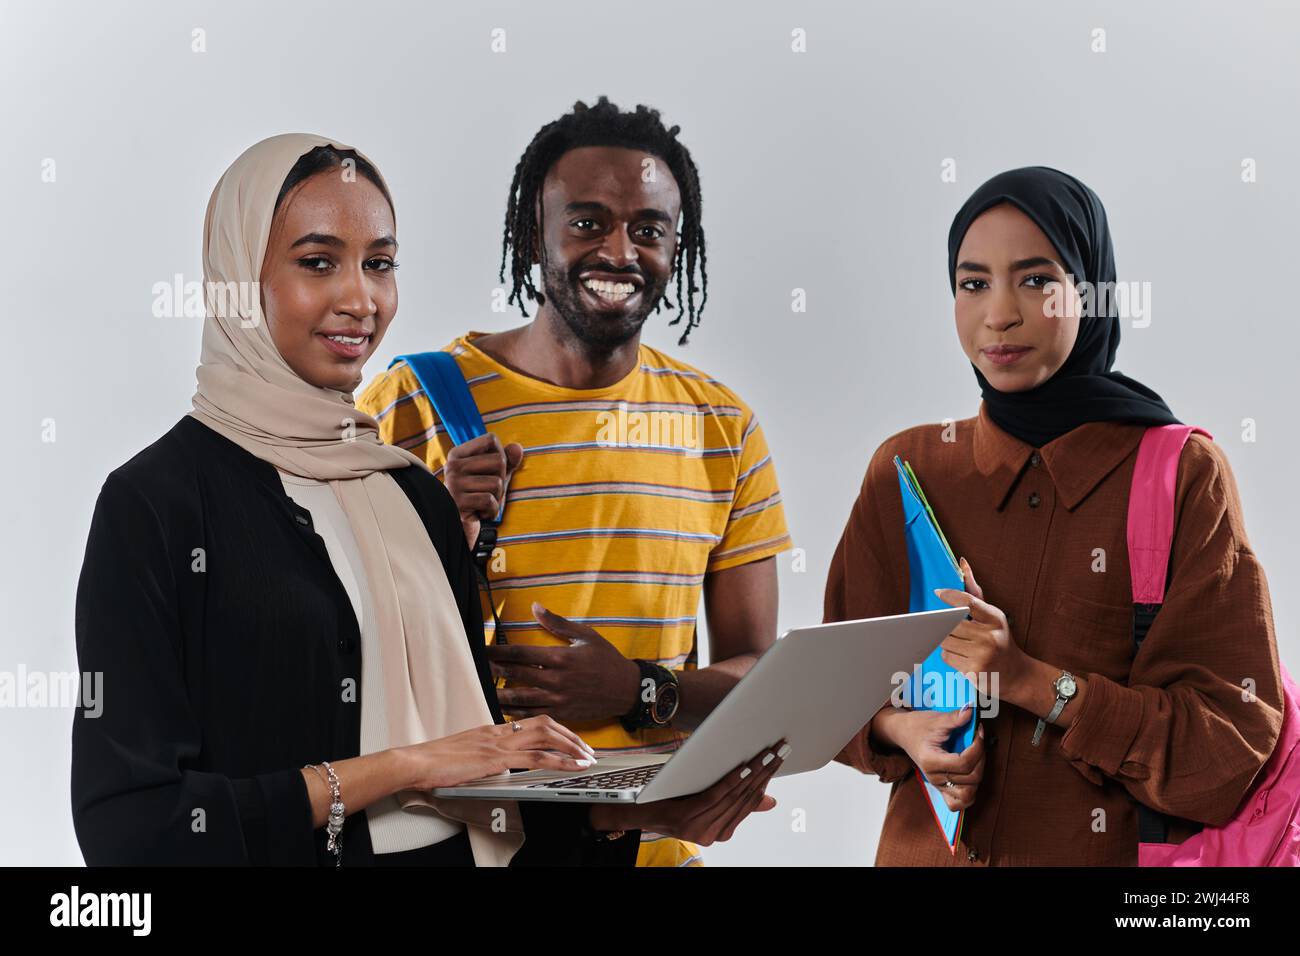 Eine Gruppe von Studenten, darunter eine afroamerikanische Studentin und zwei Hijab-tragende Frauen, stehen vereint gegen eine unberührte weiße Ba Stockfoto